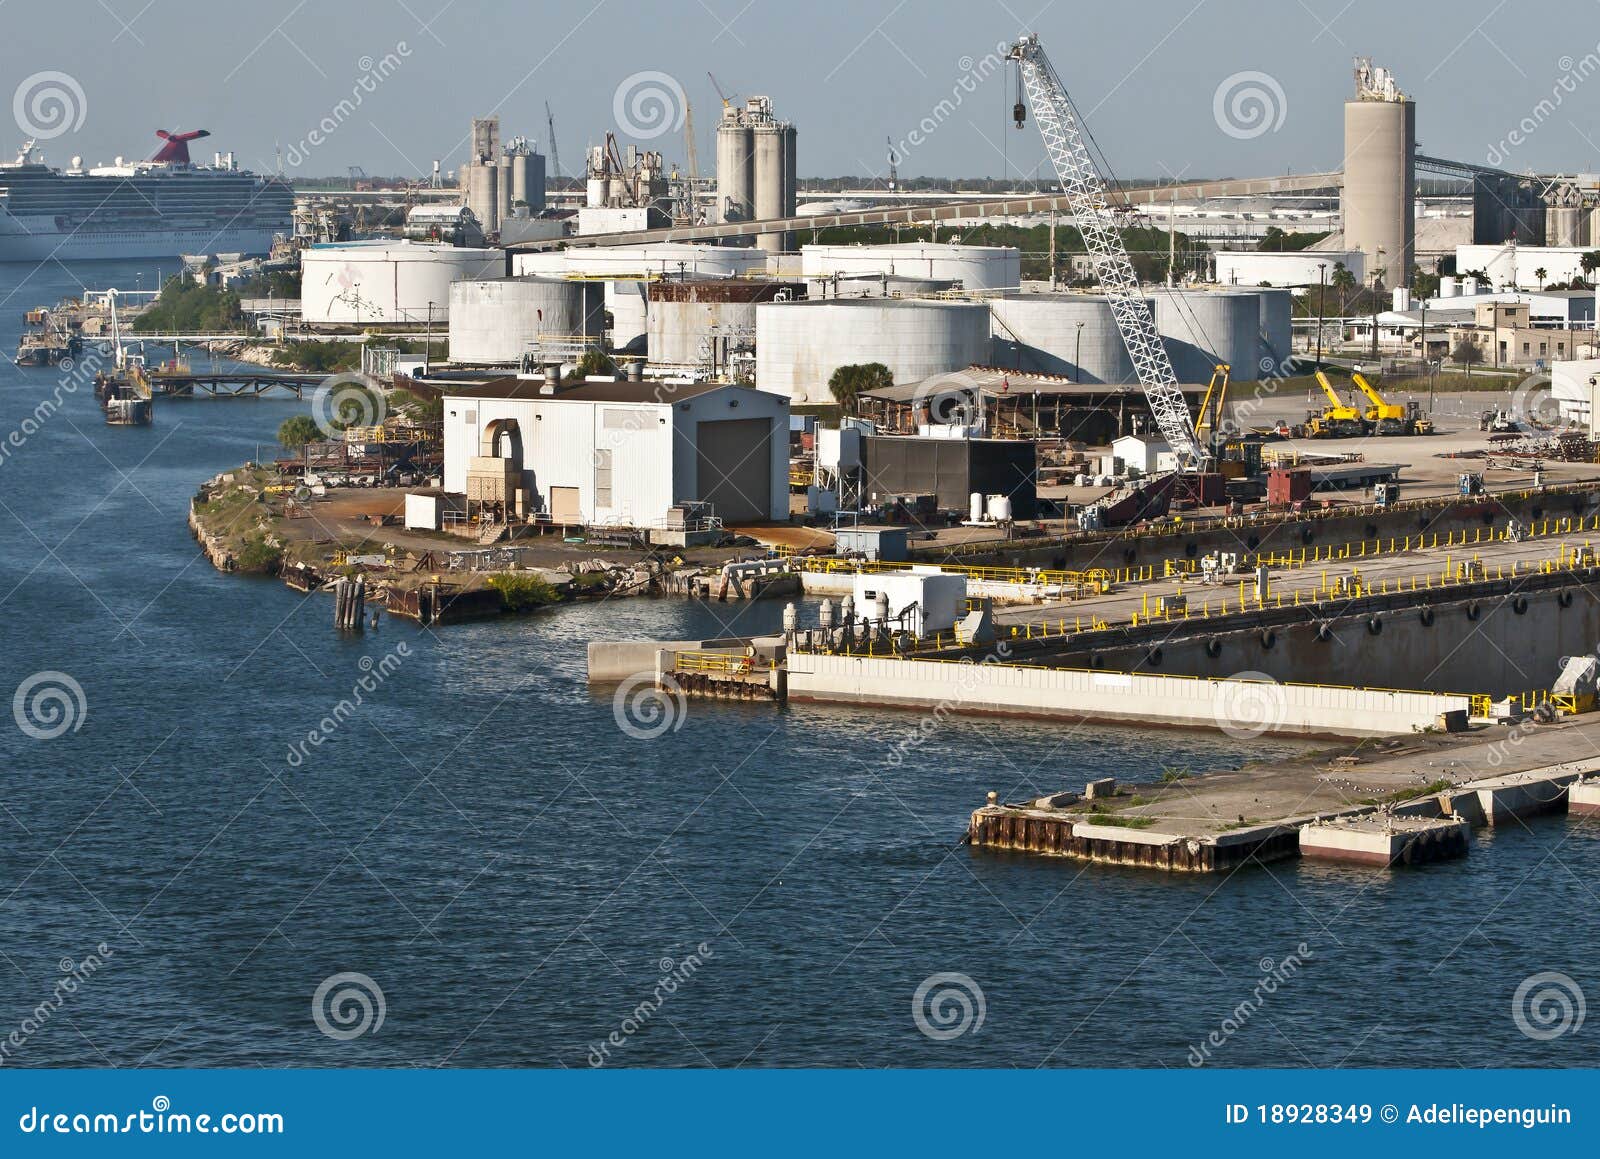 dock facilities, port of tampa. florida